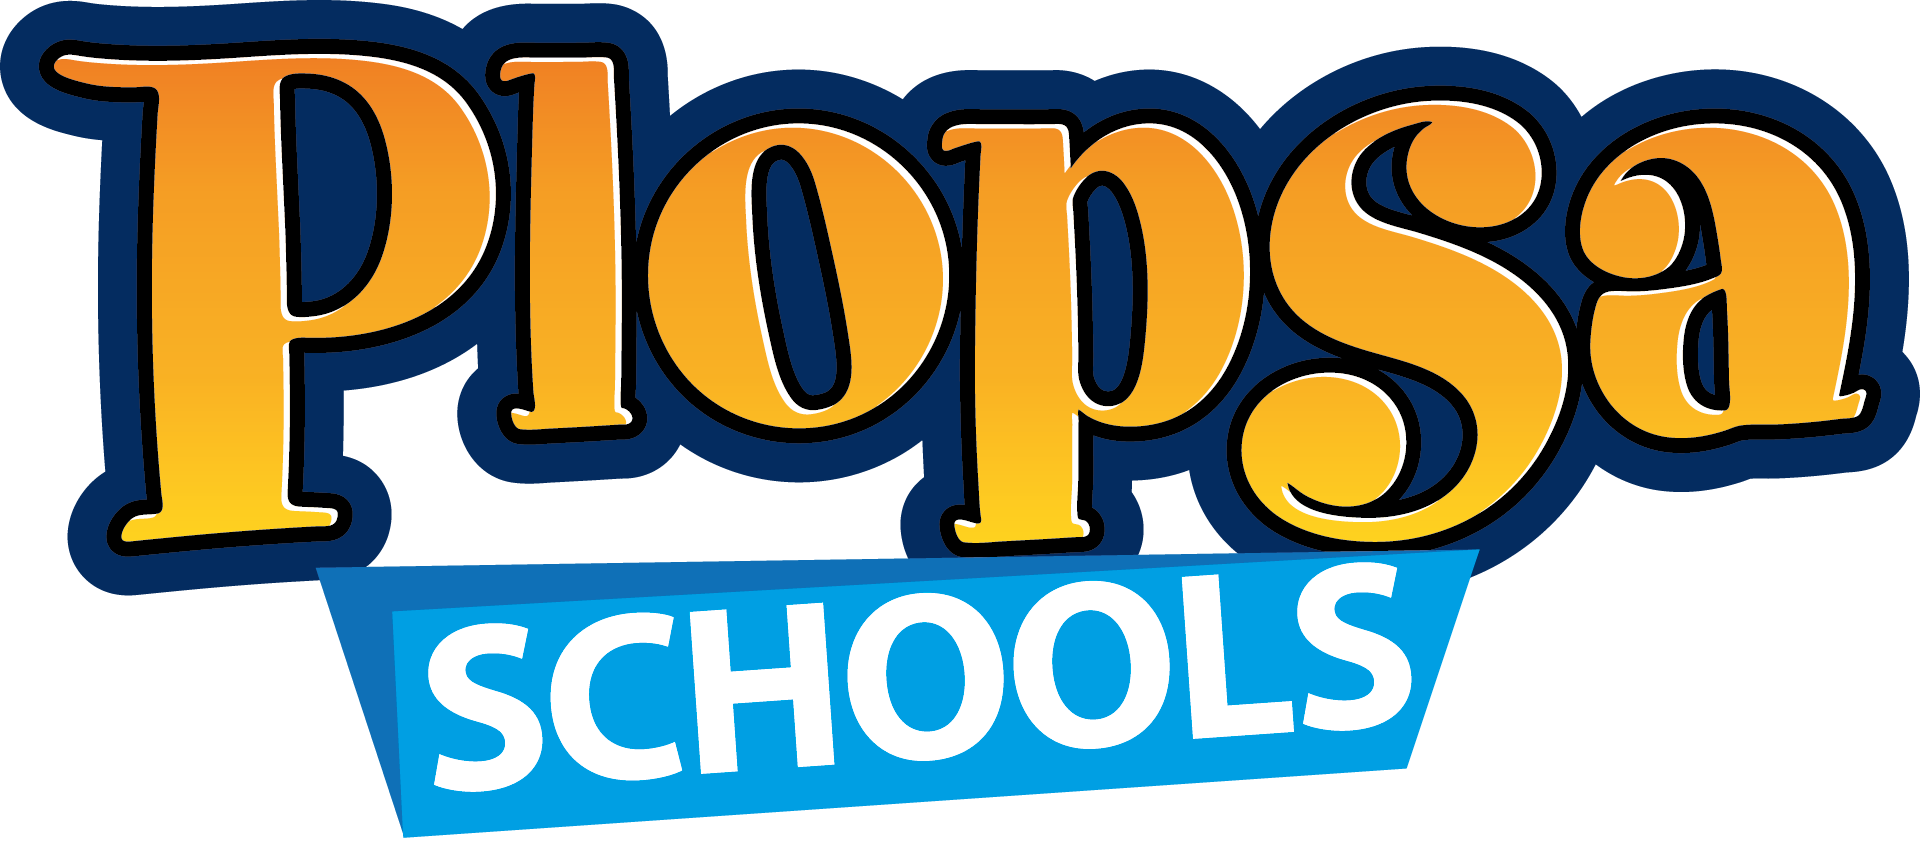      Plopsa Schools
 